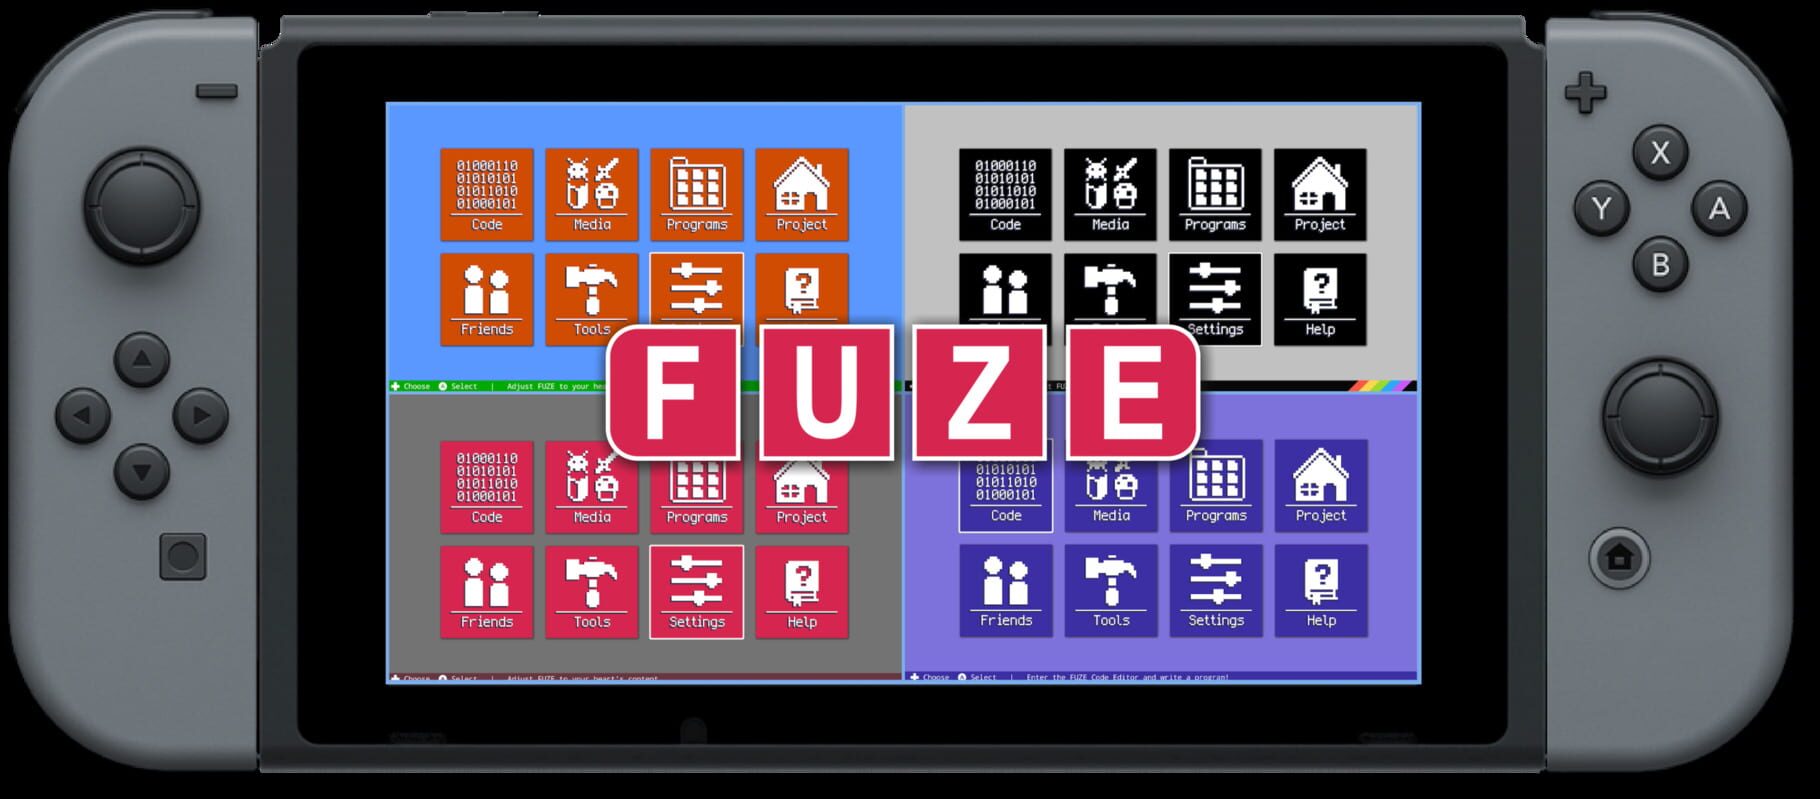 Fuze4 Nintendo Switch screenshot